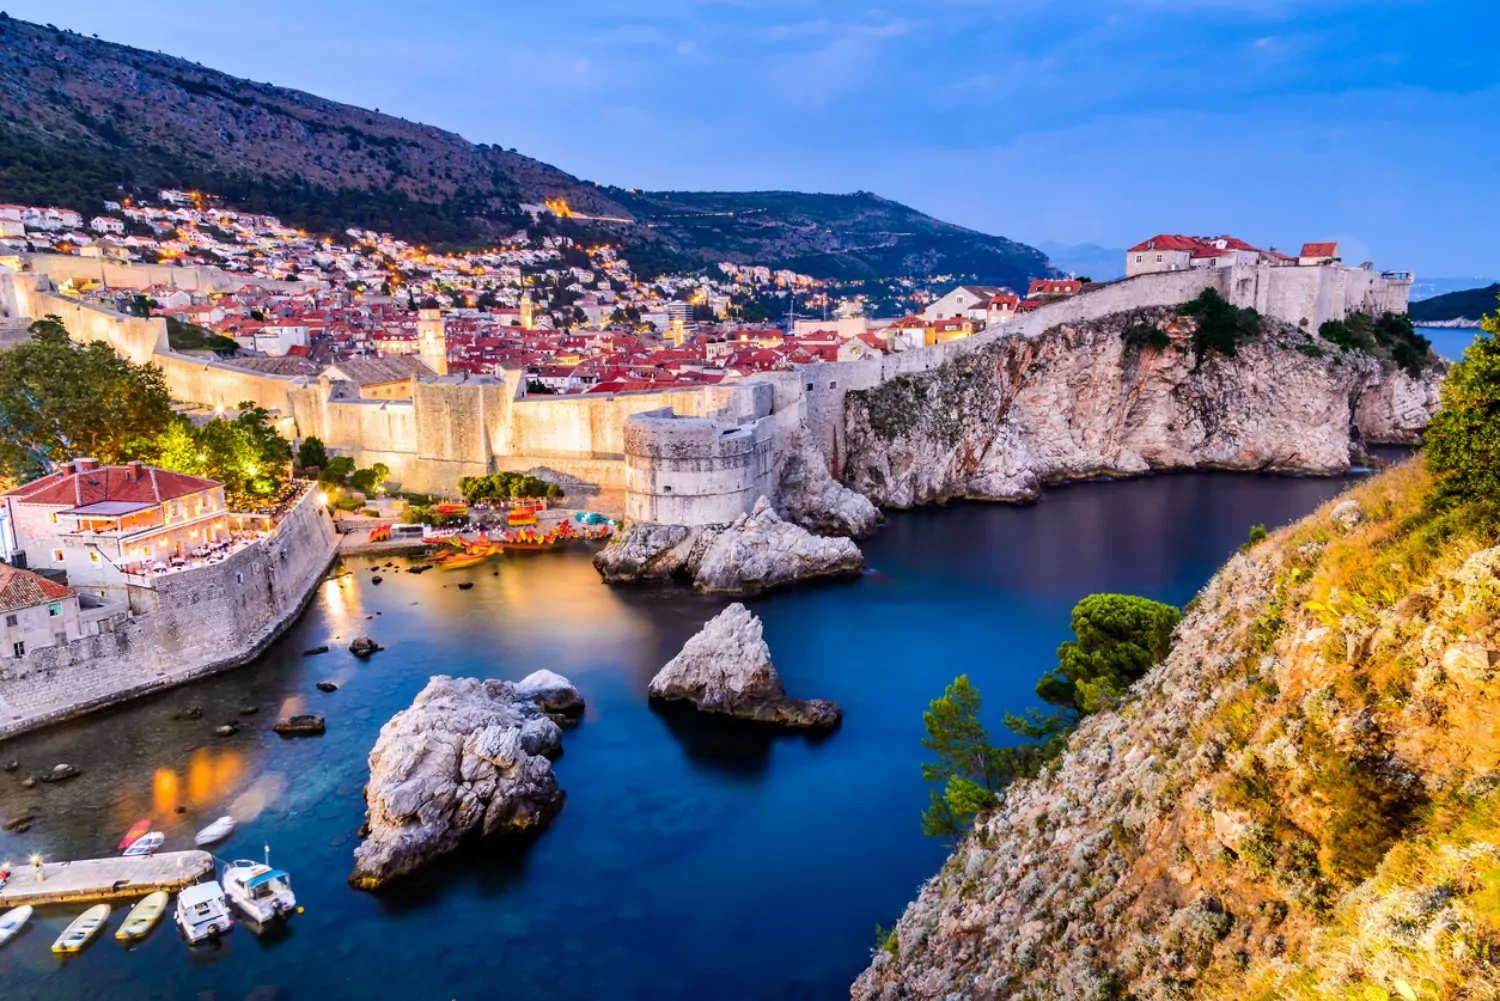 Lua de mel na Croácia — Dubrovnik